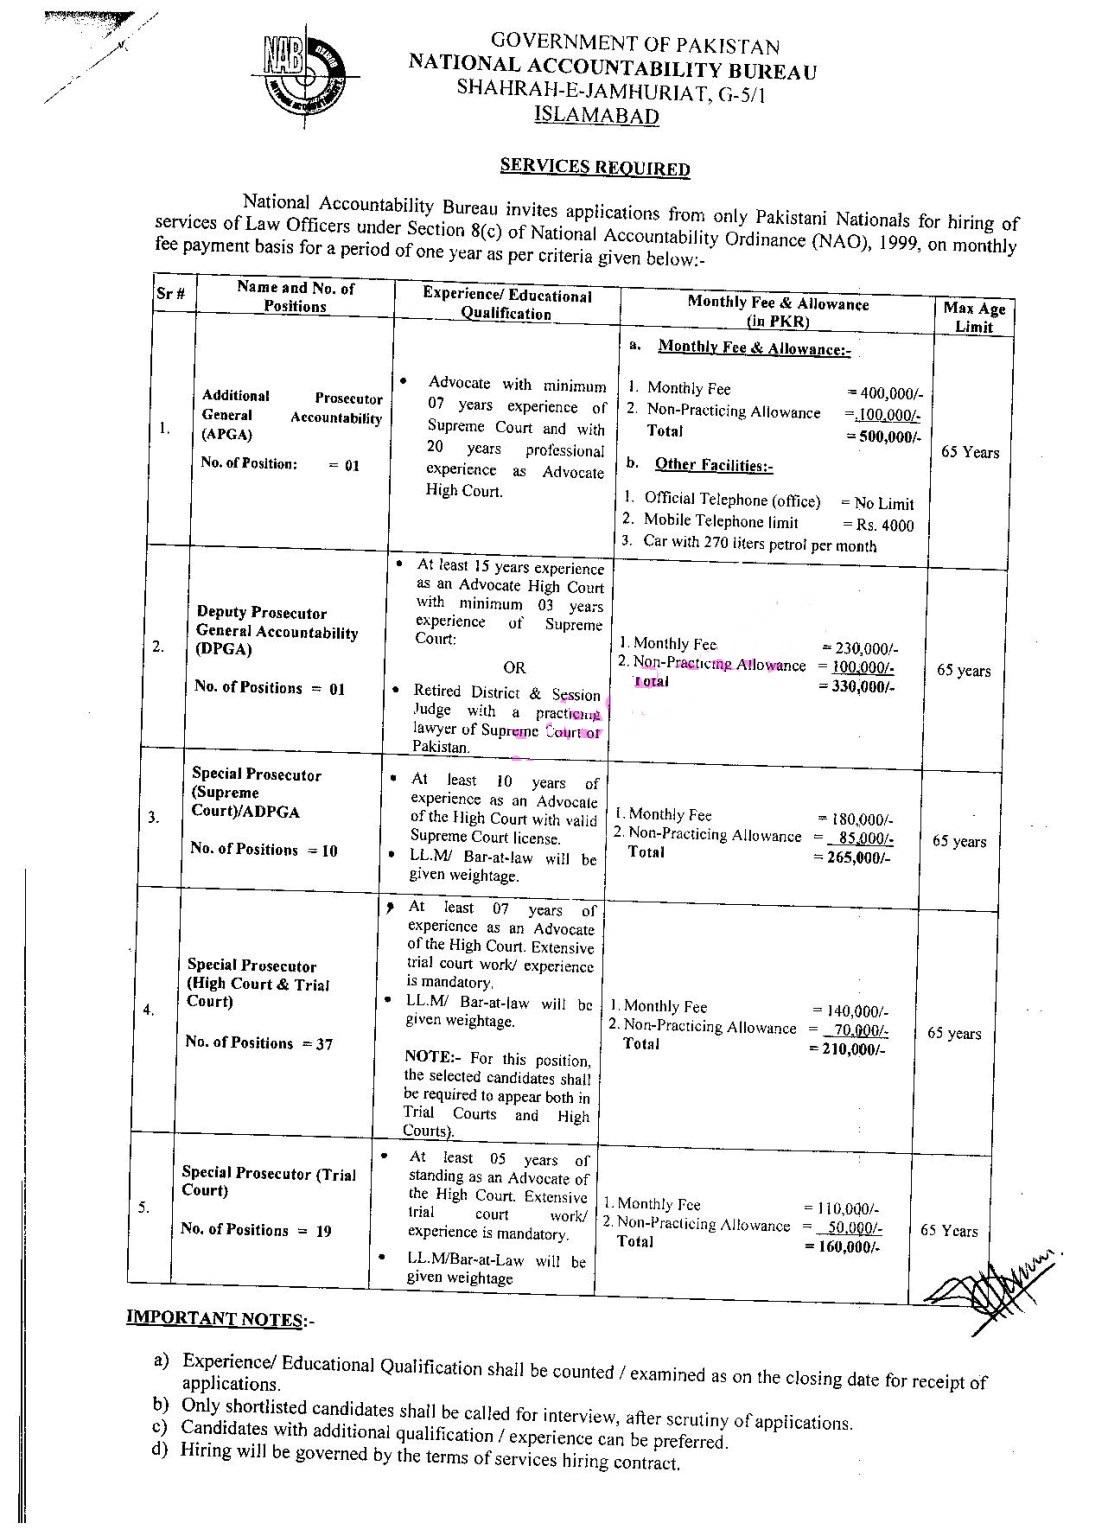 NAB Karachi Stenotypist Jobs 2021 Online Application Form Test Schedule